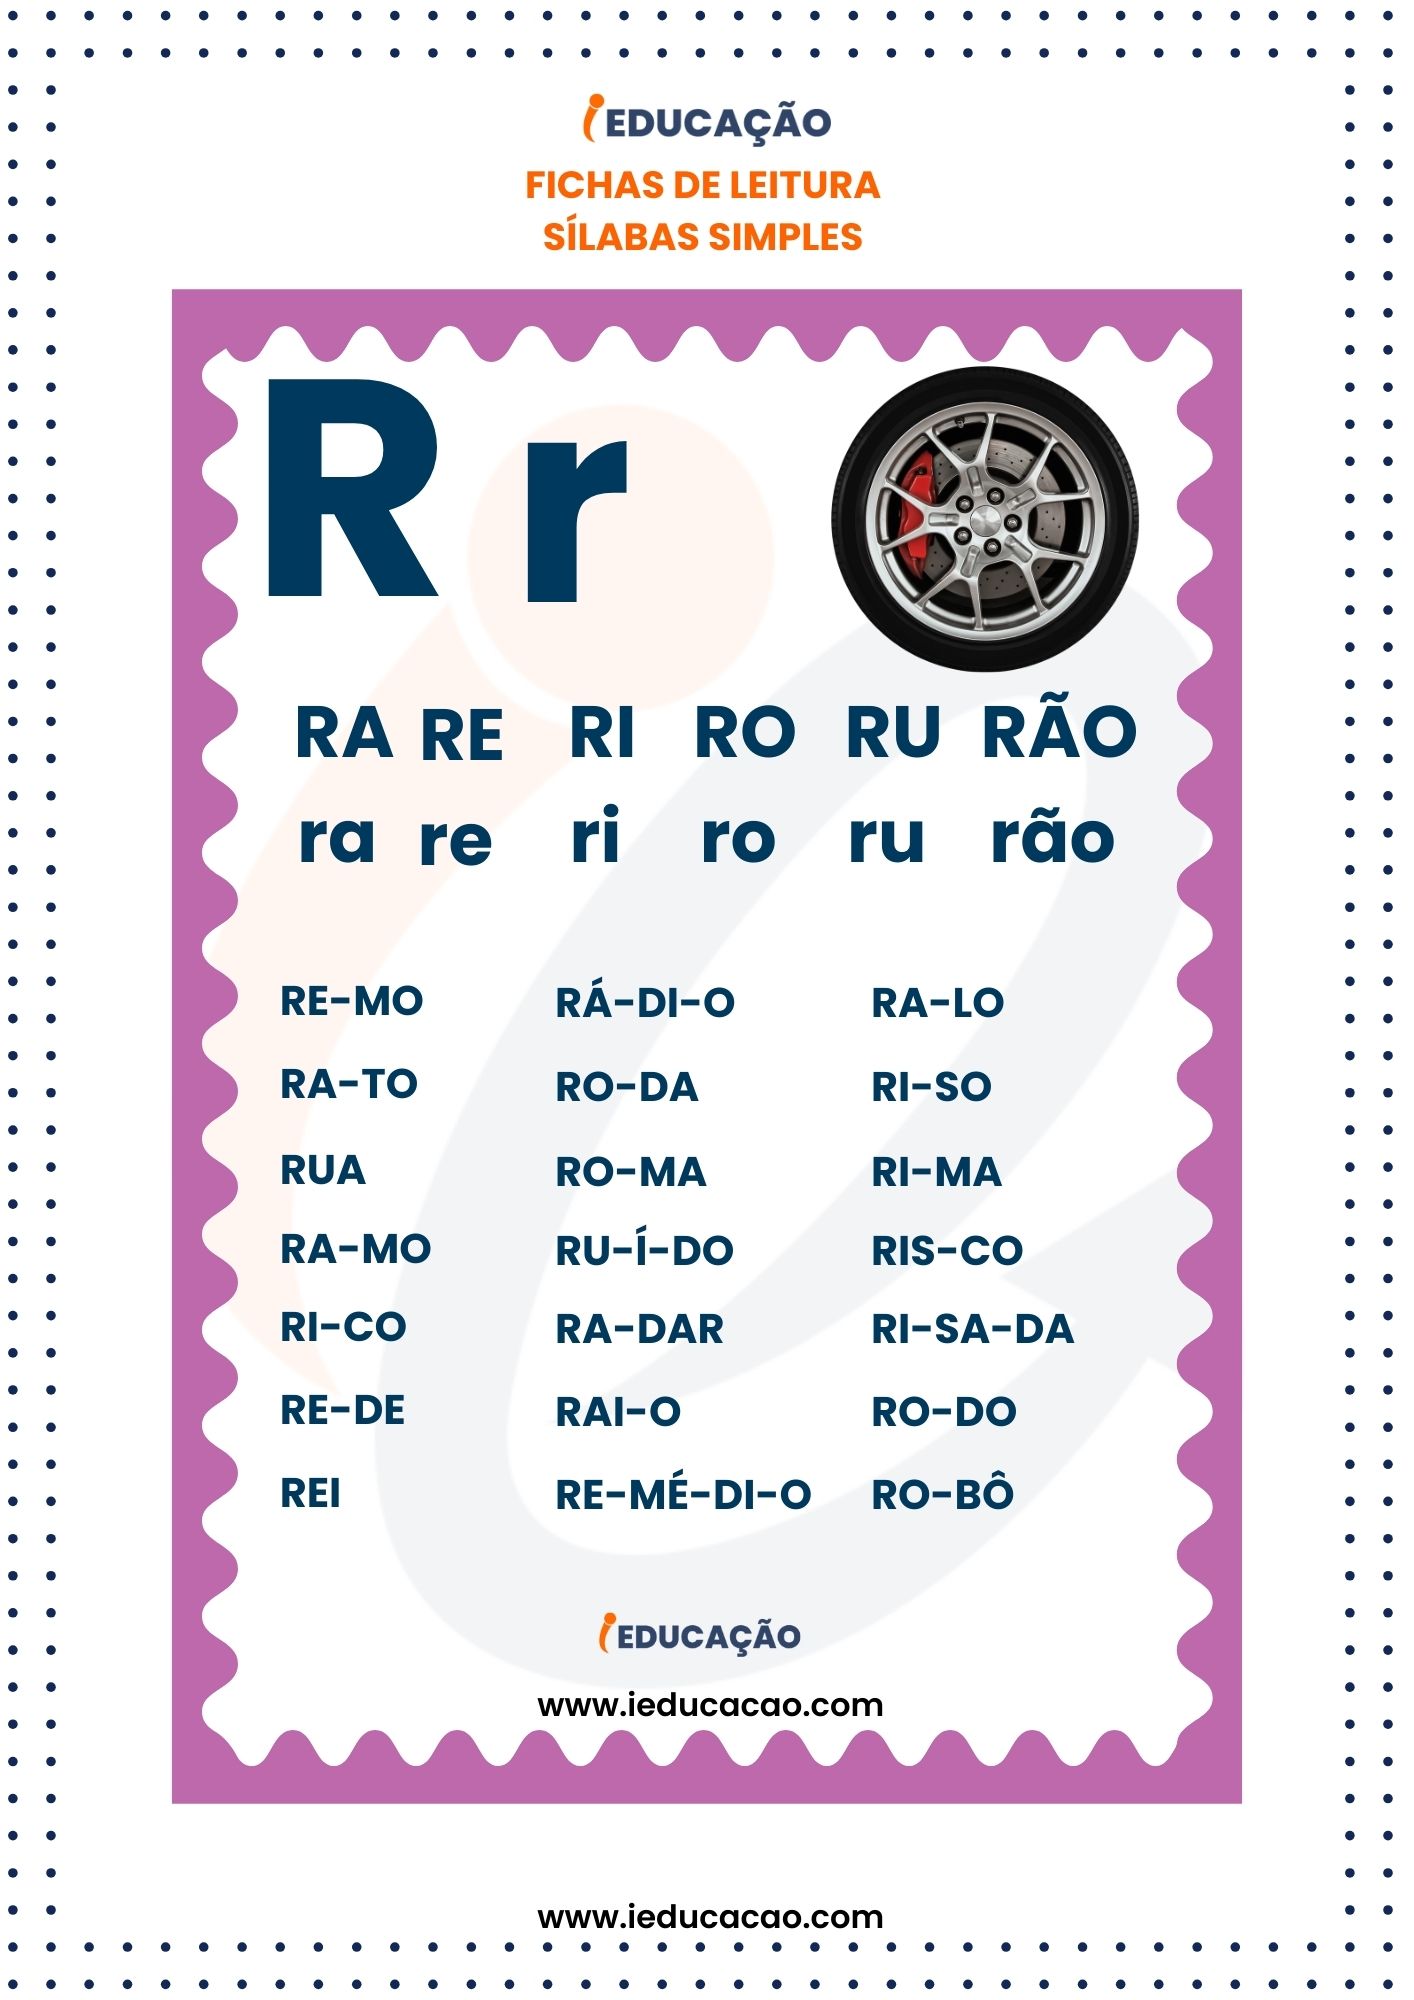 Fichas de Leitura Silabas Simples silabas Ra re ri ro ru